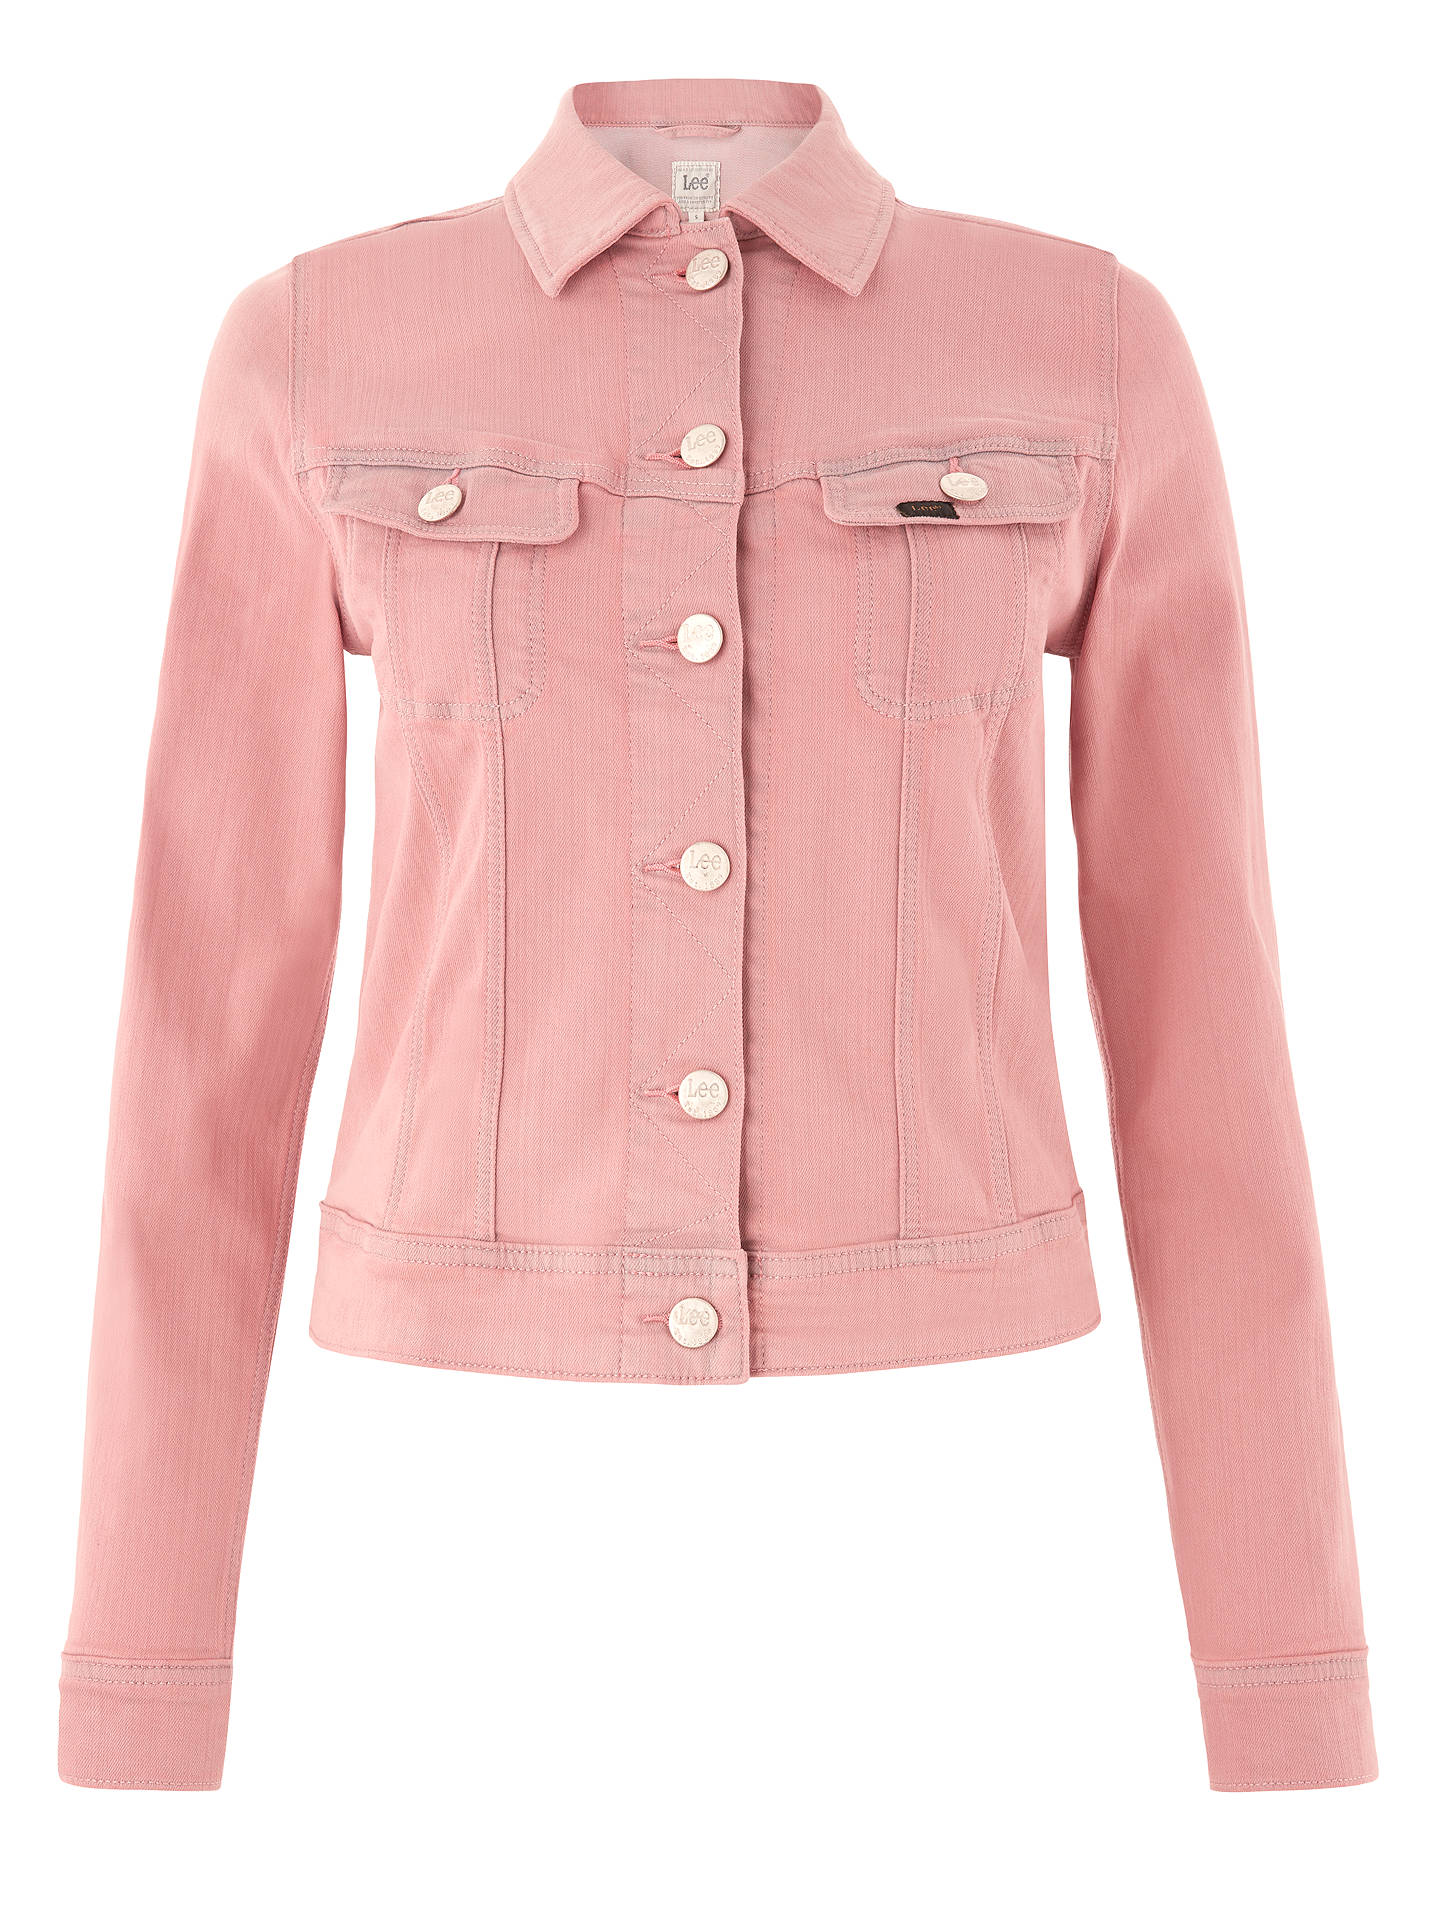 Lee Slim Rider Denim Jacket, Pastel Pink at John Lewis & Partners